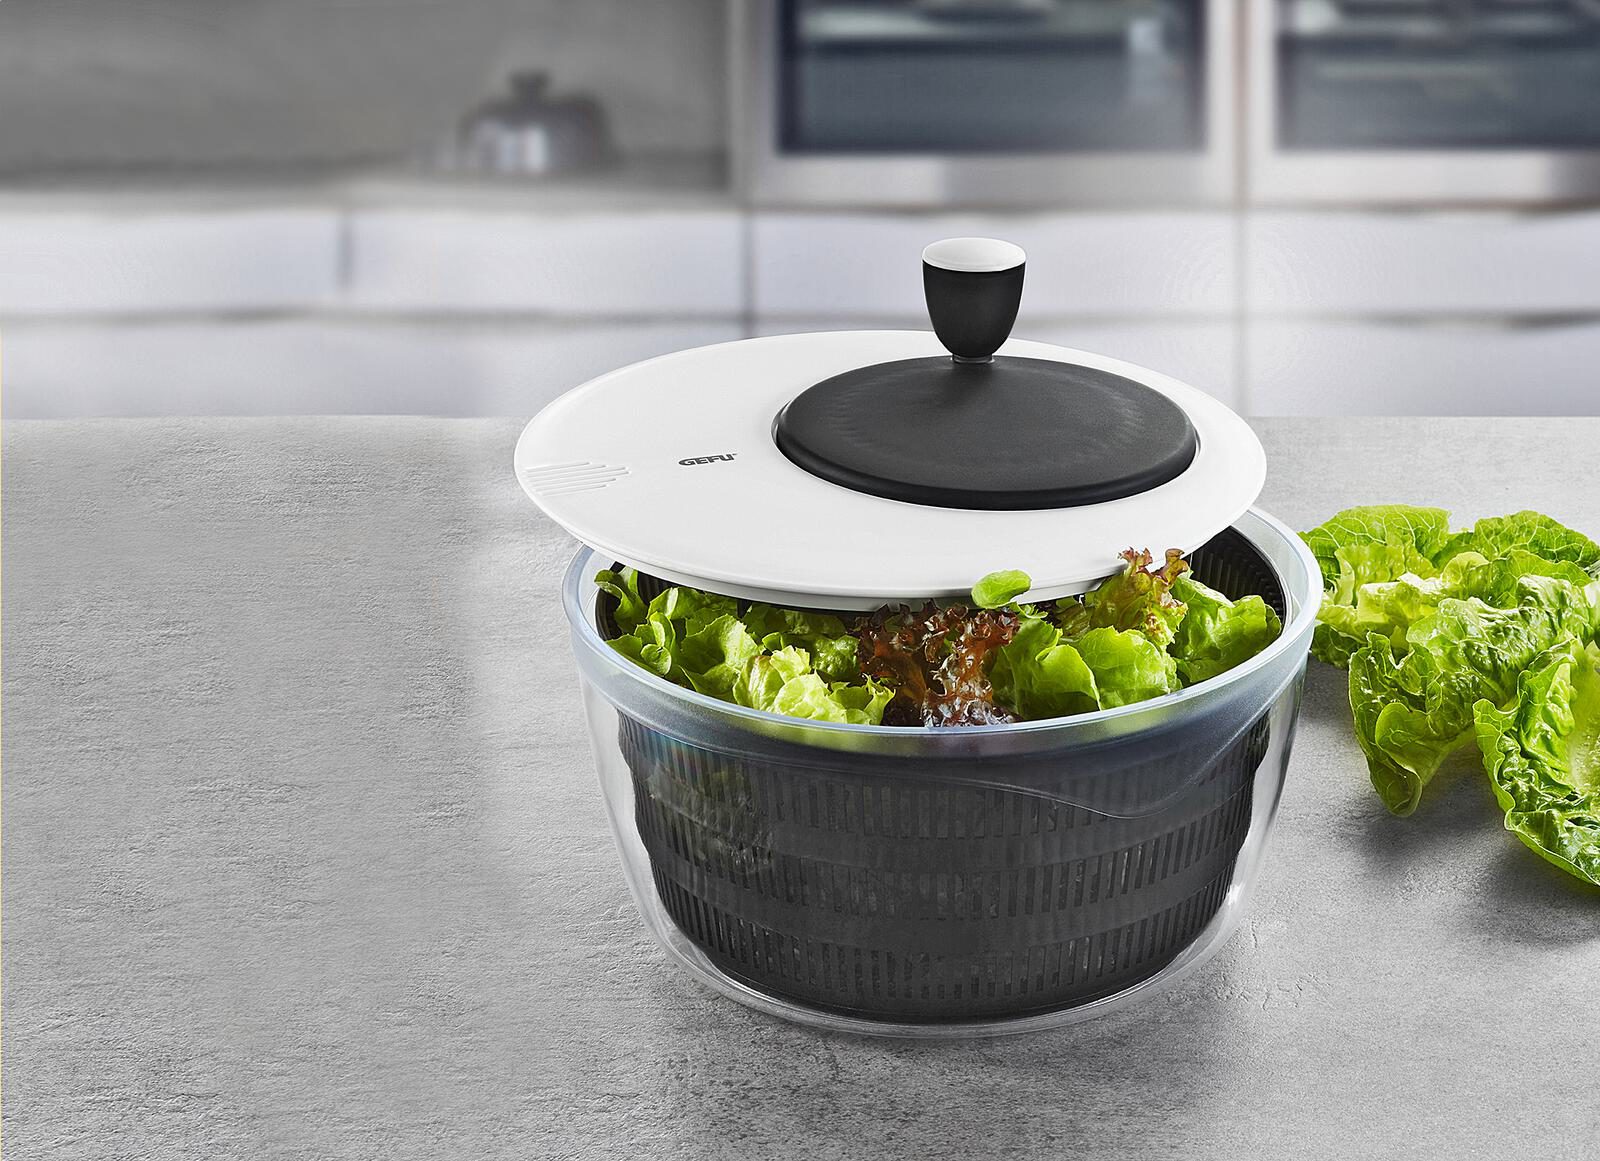 Küchenhelfer Gefu aus Kunststoff in Weiß Schwarz GEFU Salatschleuder ROTARE hochwertiger Kunststoff